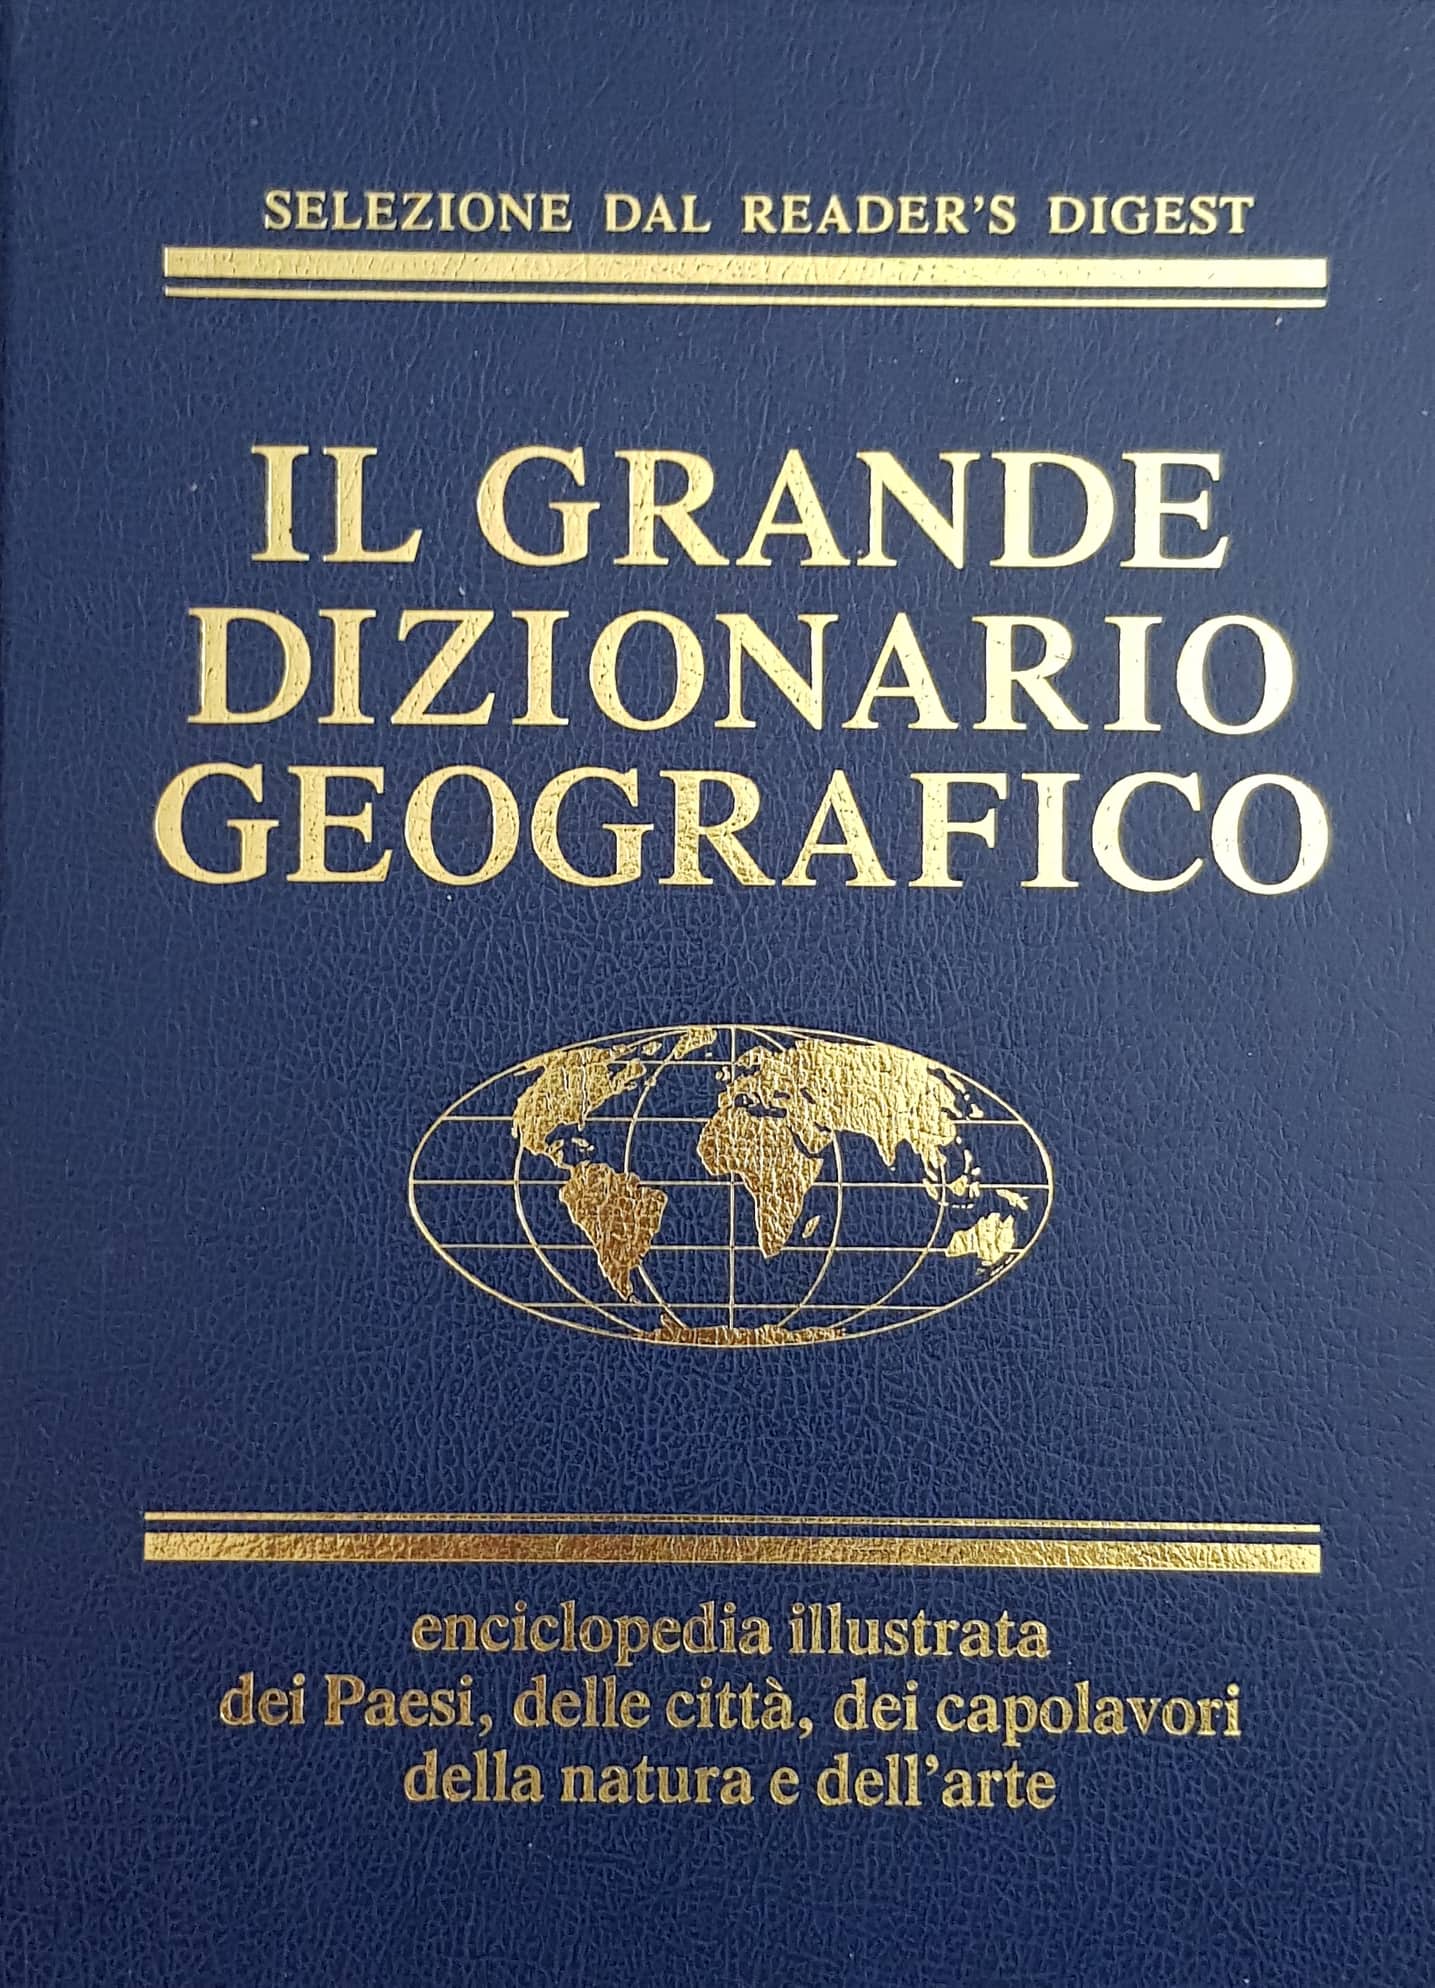 Copertina di Il grande dizionario geografico